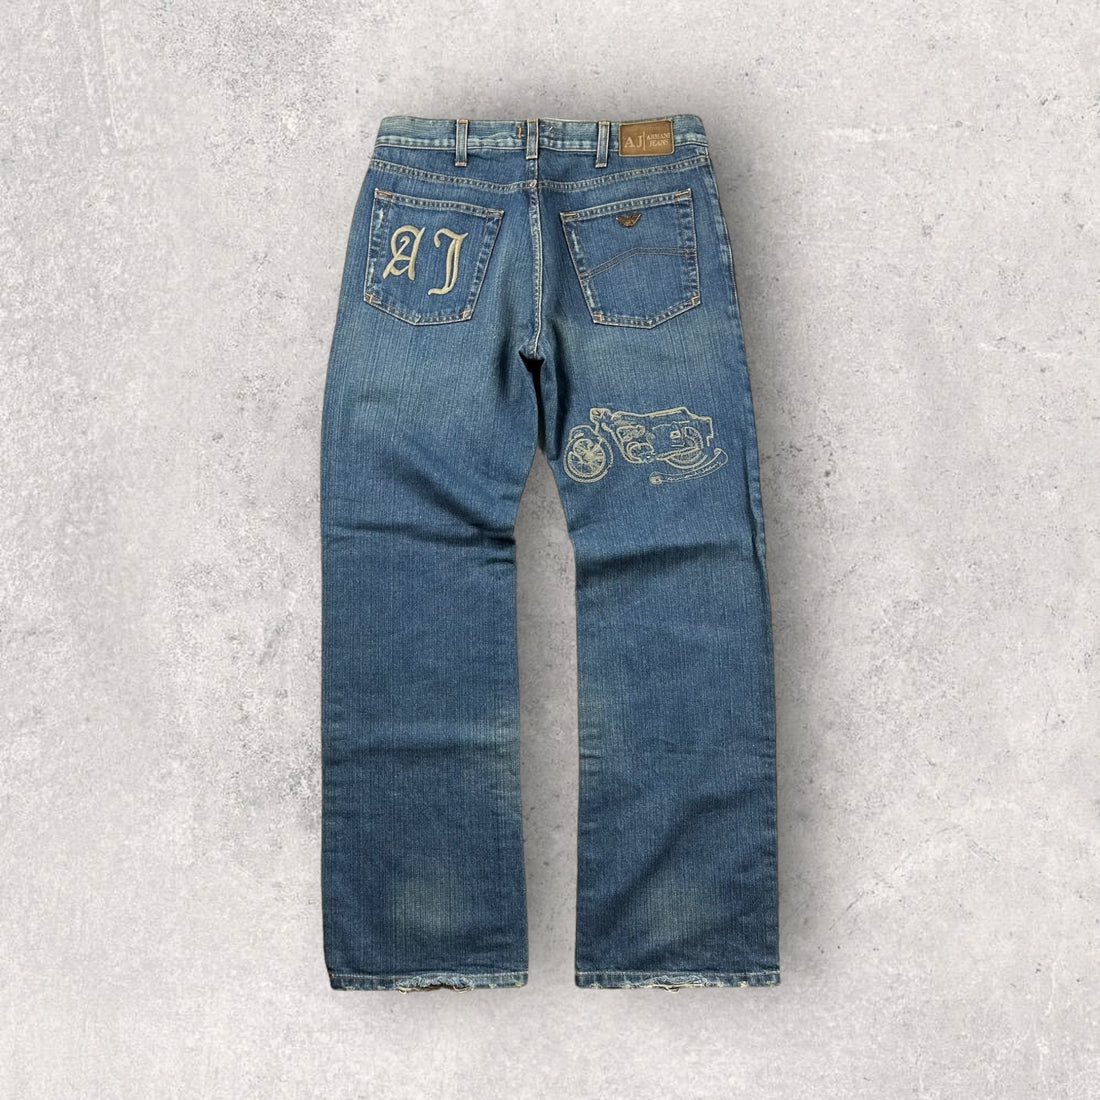 Vintage Armani Jeans (32)